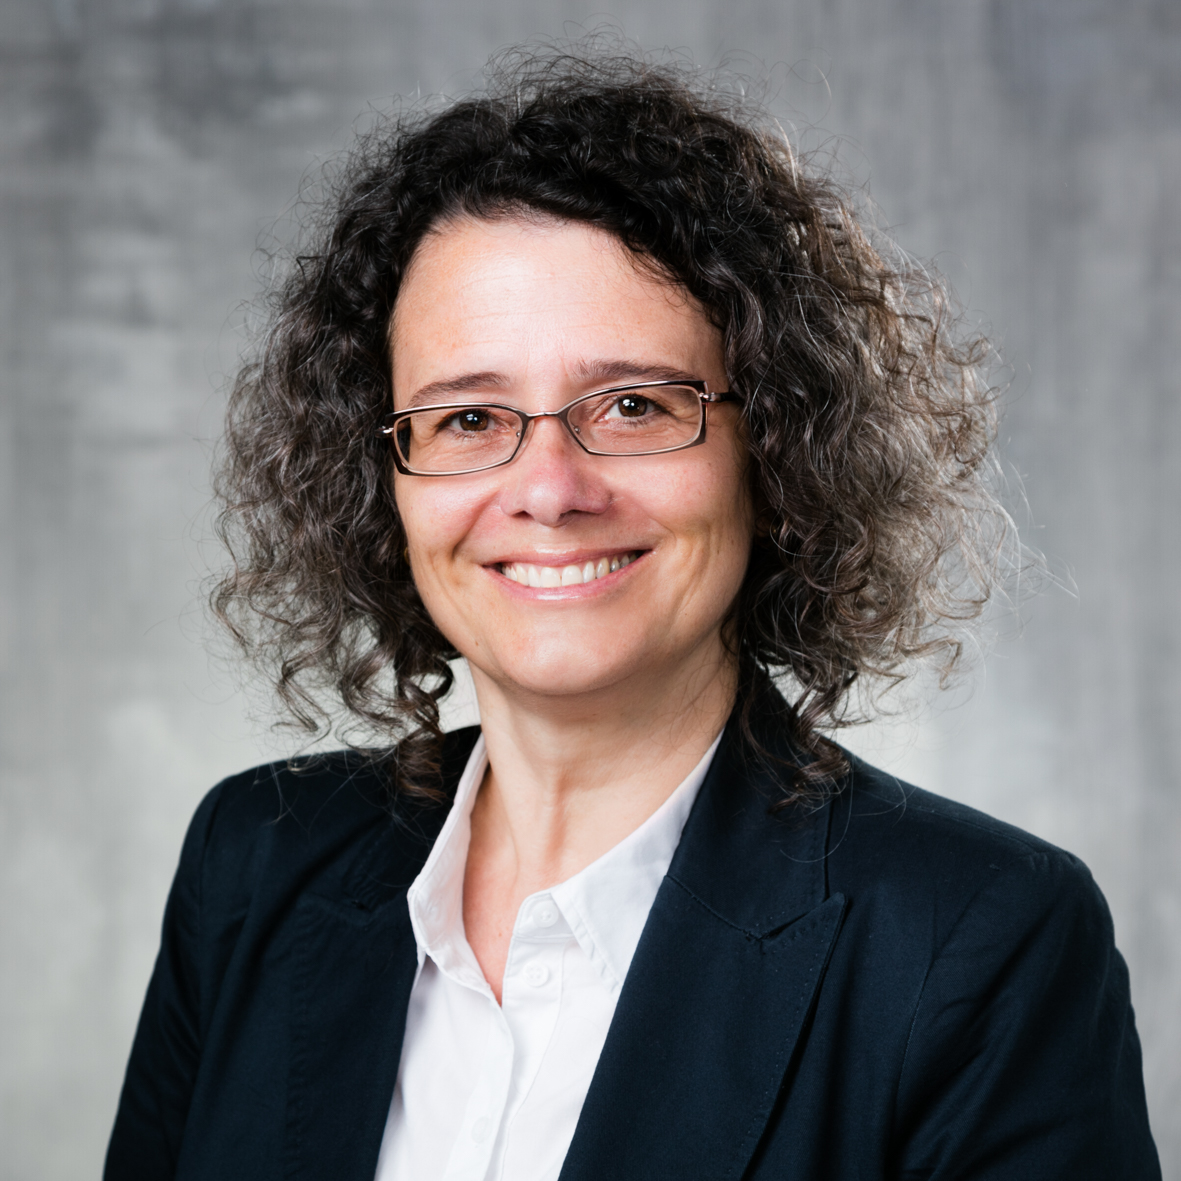 Prof. Dr. Eveline Gutzwiller-Helfenfinger